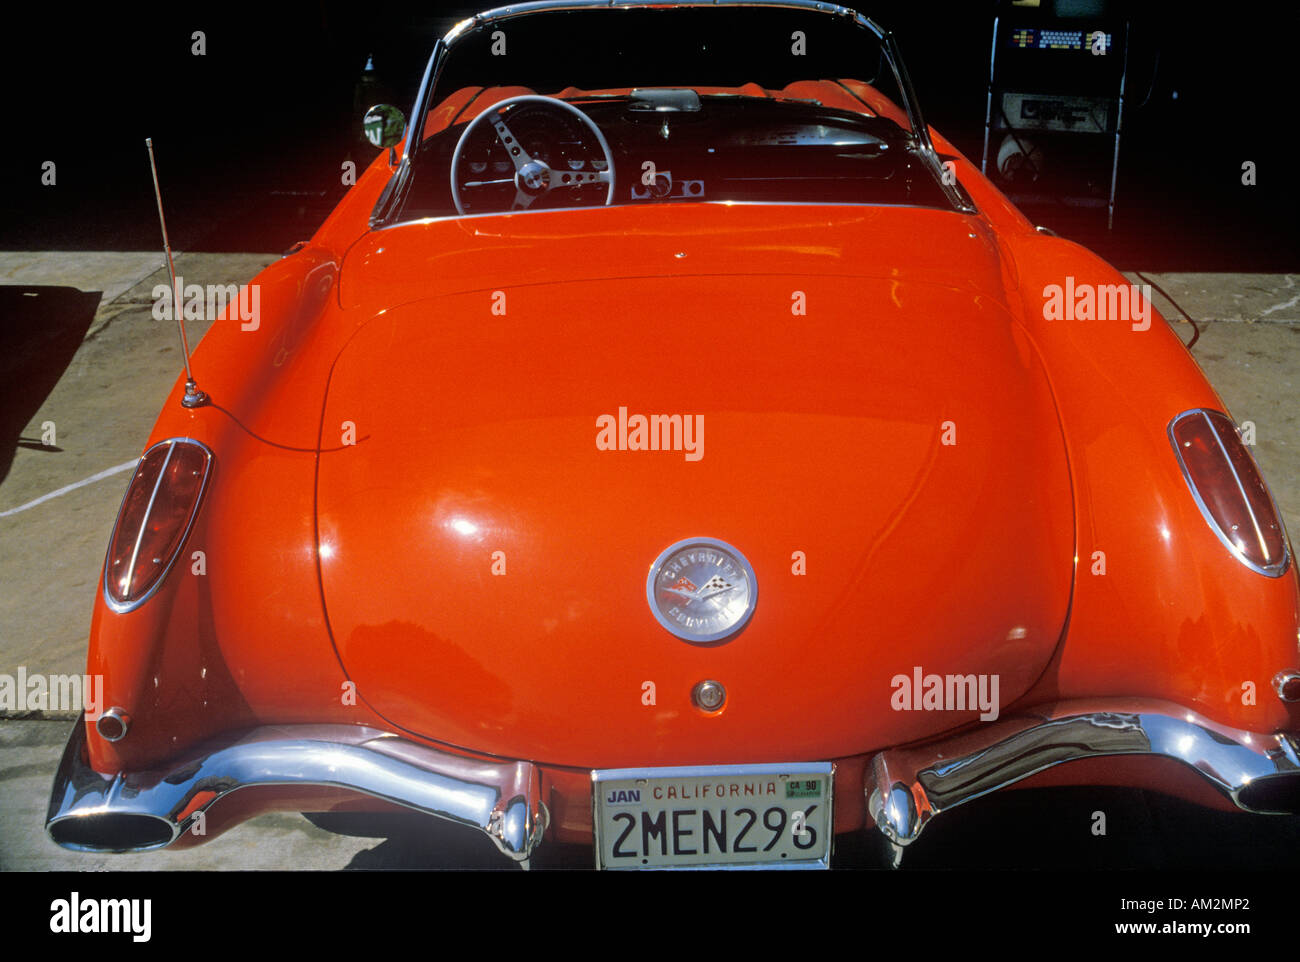 A 1957 Corvette in Los Angeles California Stock Photo